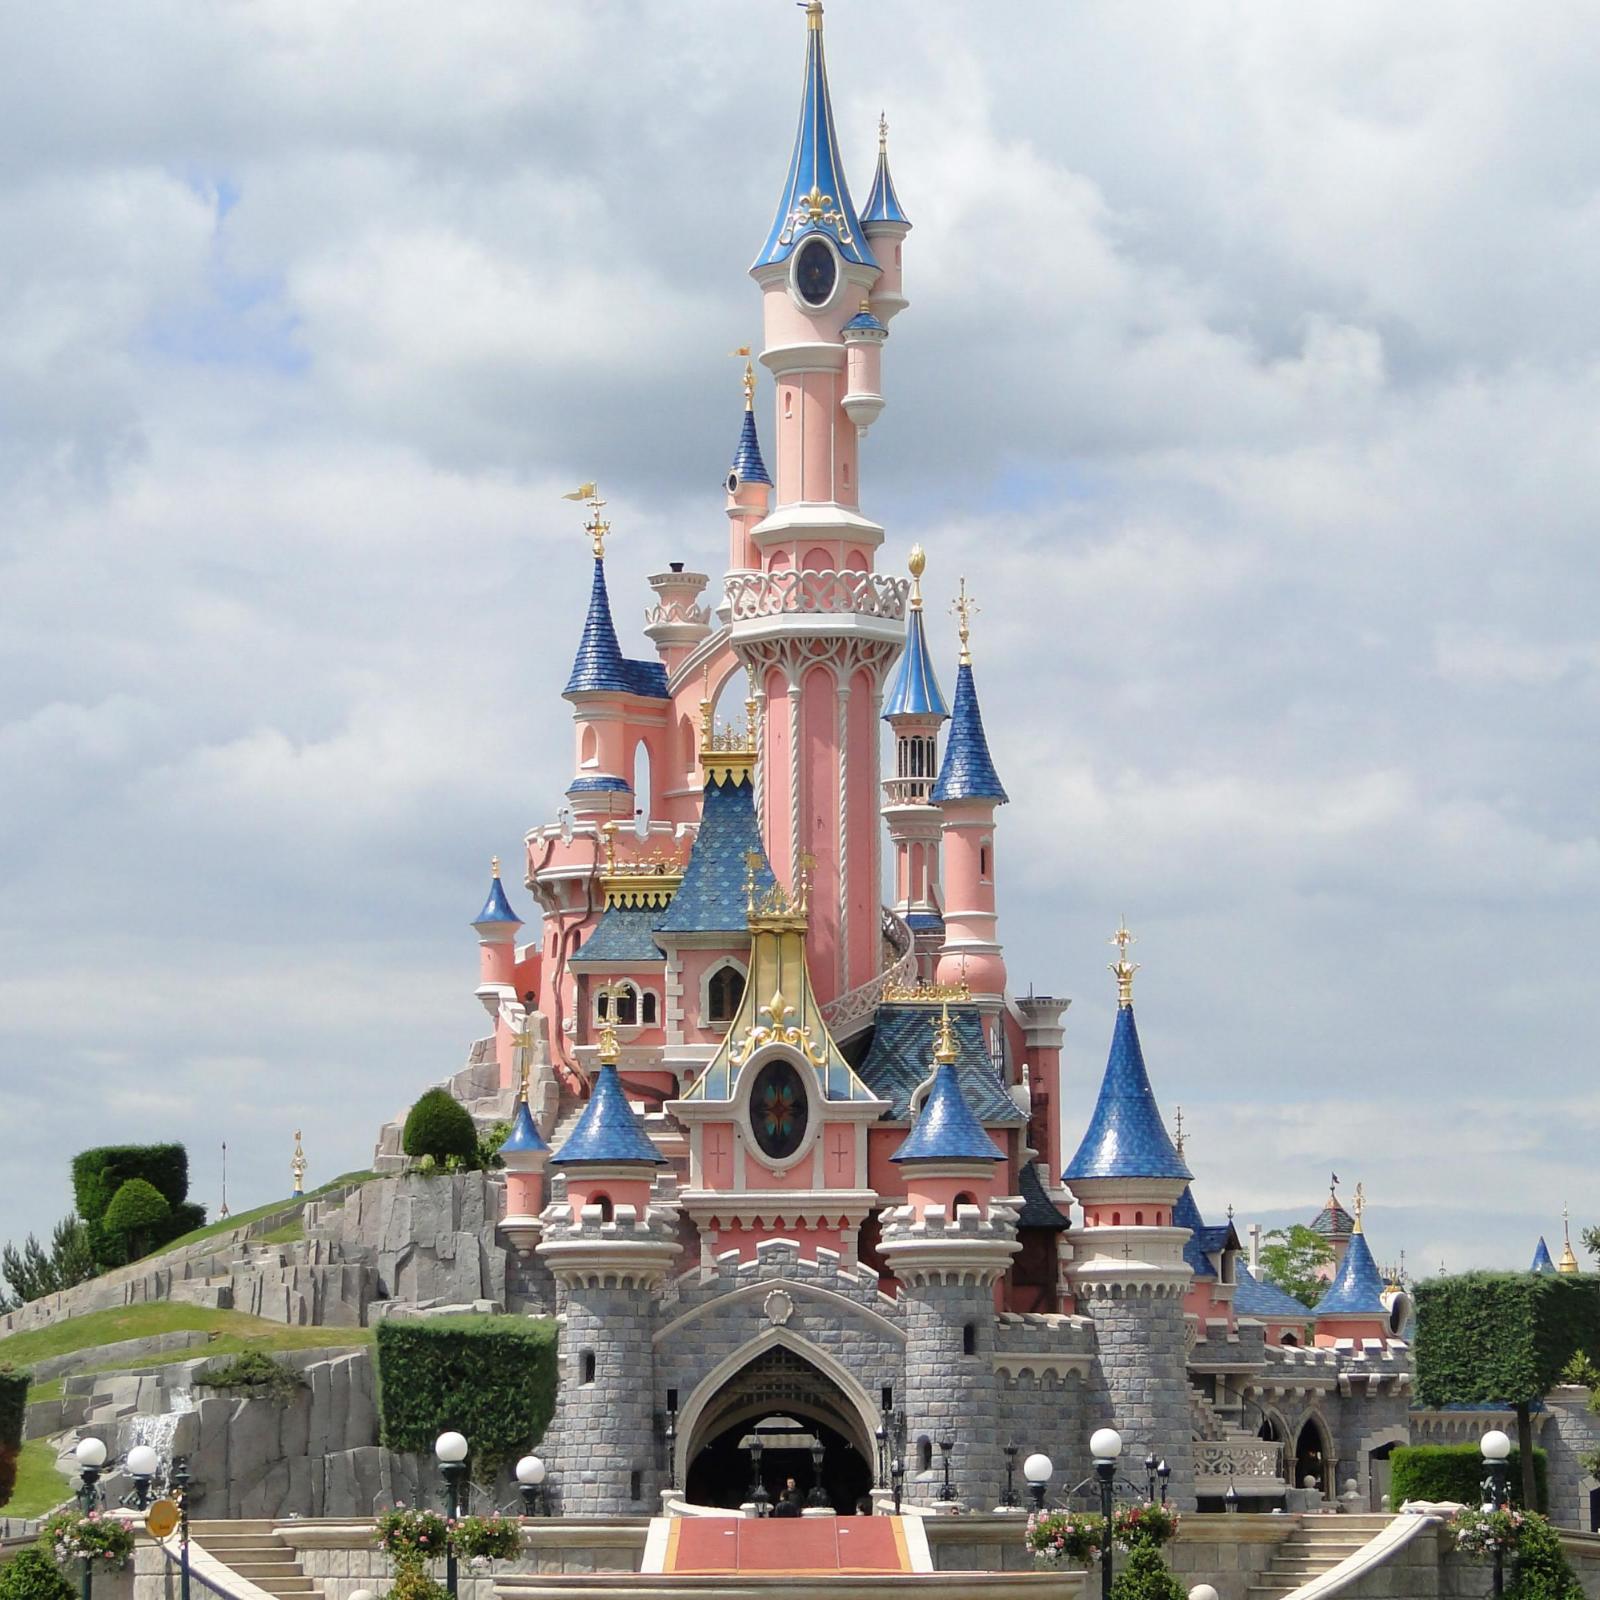 Нойшванштайн послужил прототипом замка Спящей Красавицы в парижском Диснейленде.